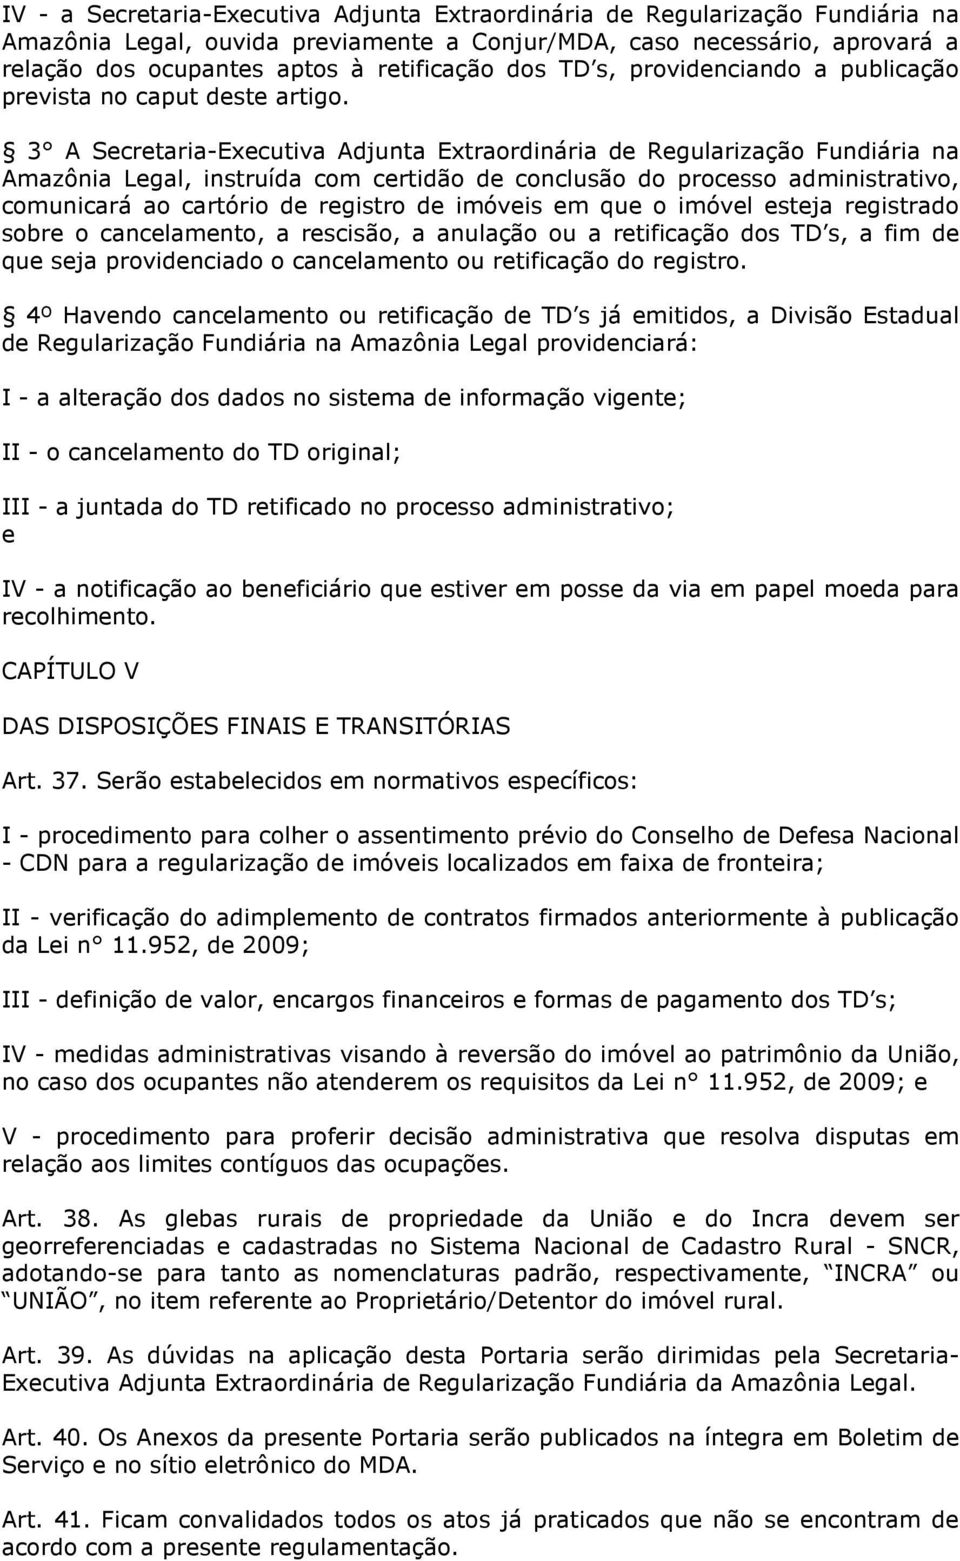 3 A Secretaria-Executiva Adjunta Extraordinária de Regularização Fundiária na Amazônia Legal, instruída com certidão de conclusão do processo administrativo, comunicará ao cartório de registro de